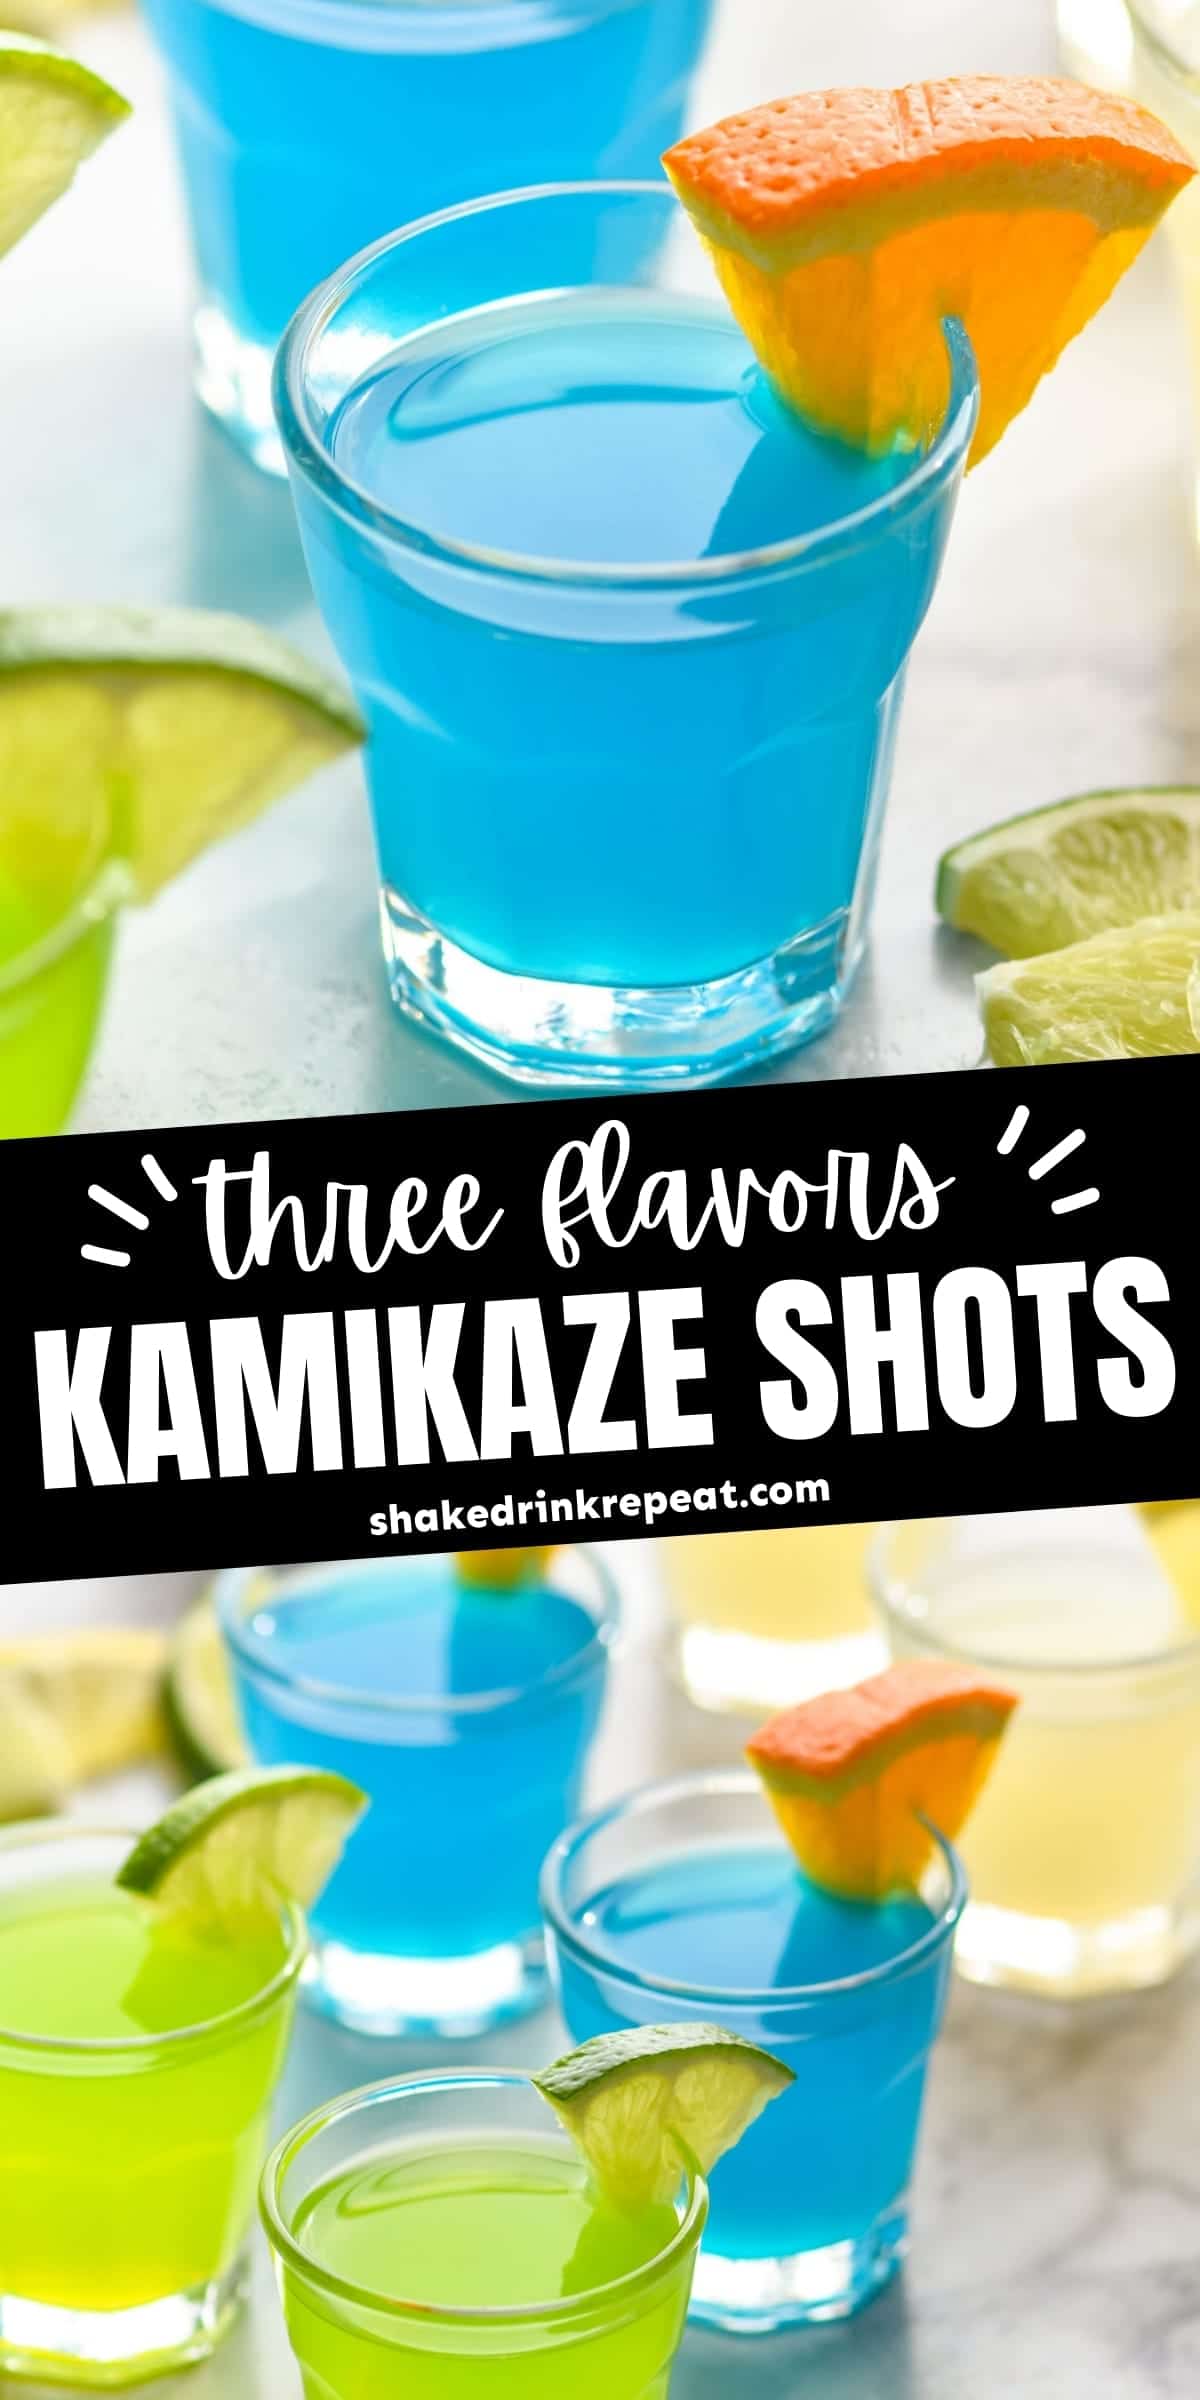 kamikaze drink tequila